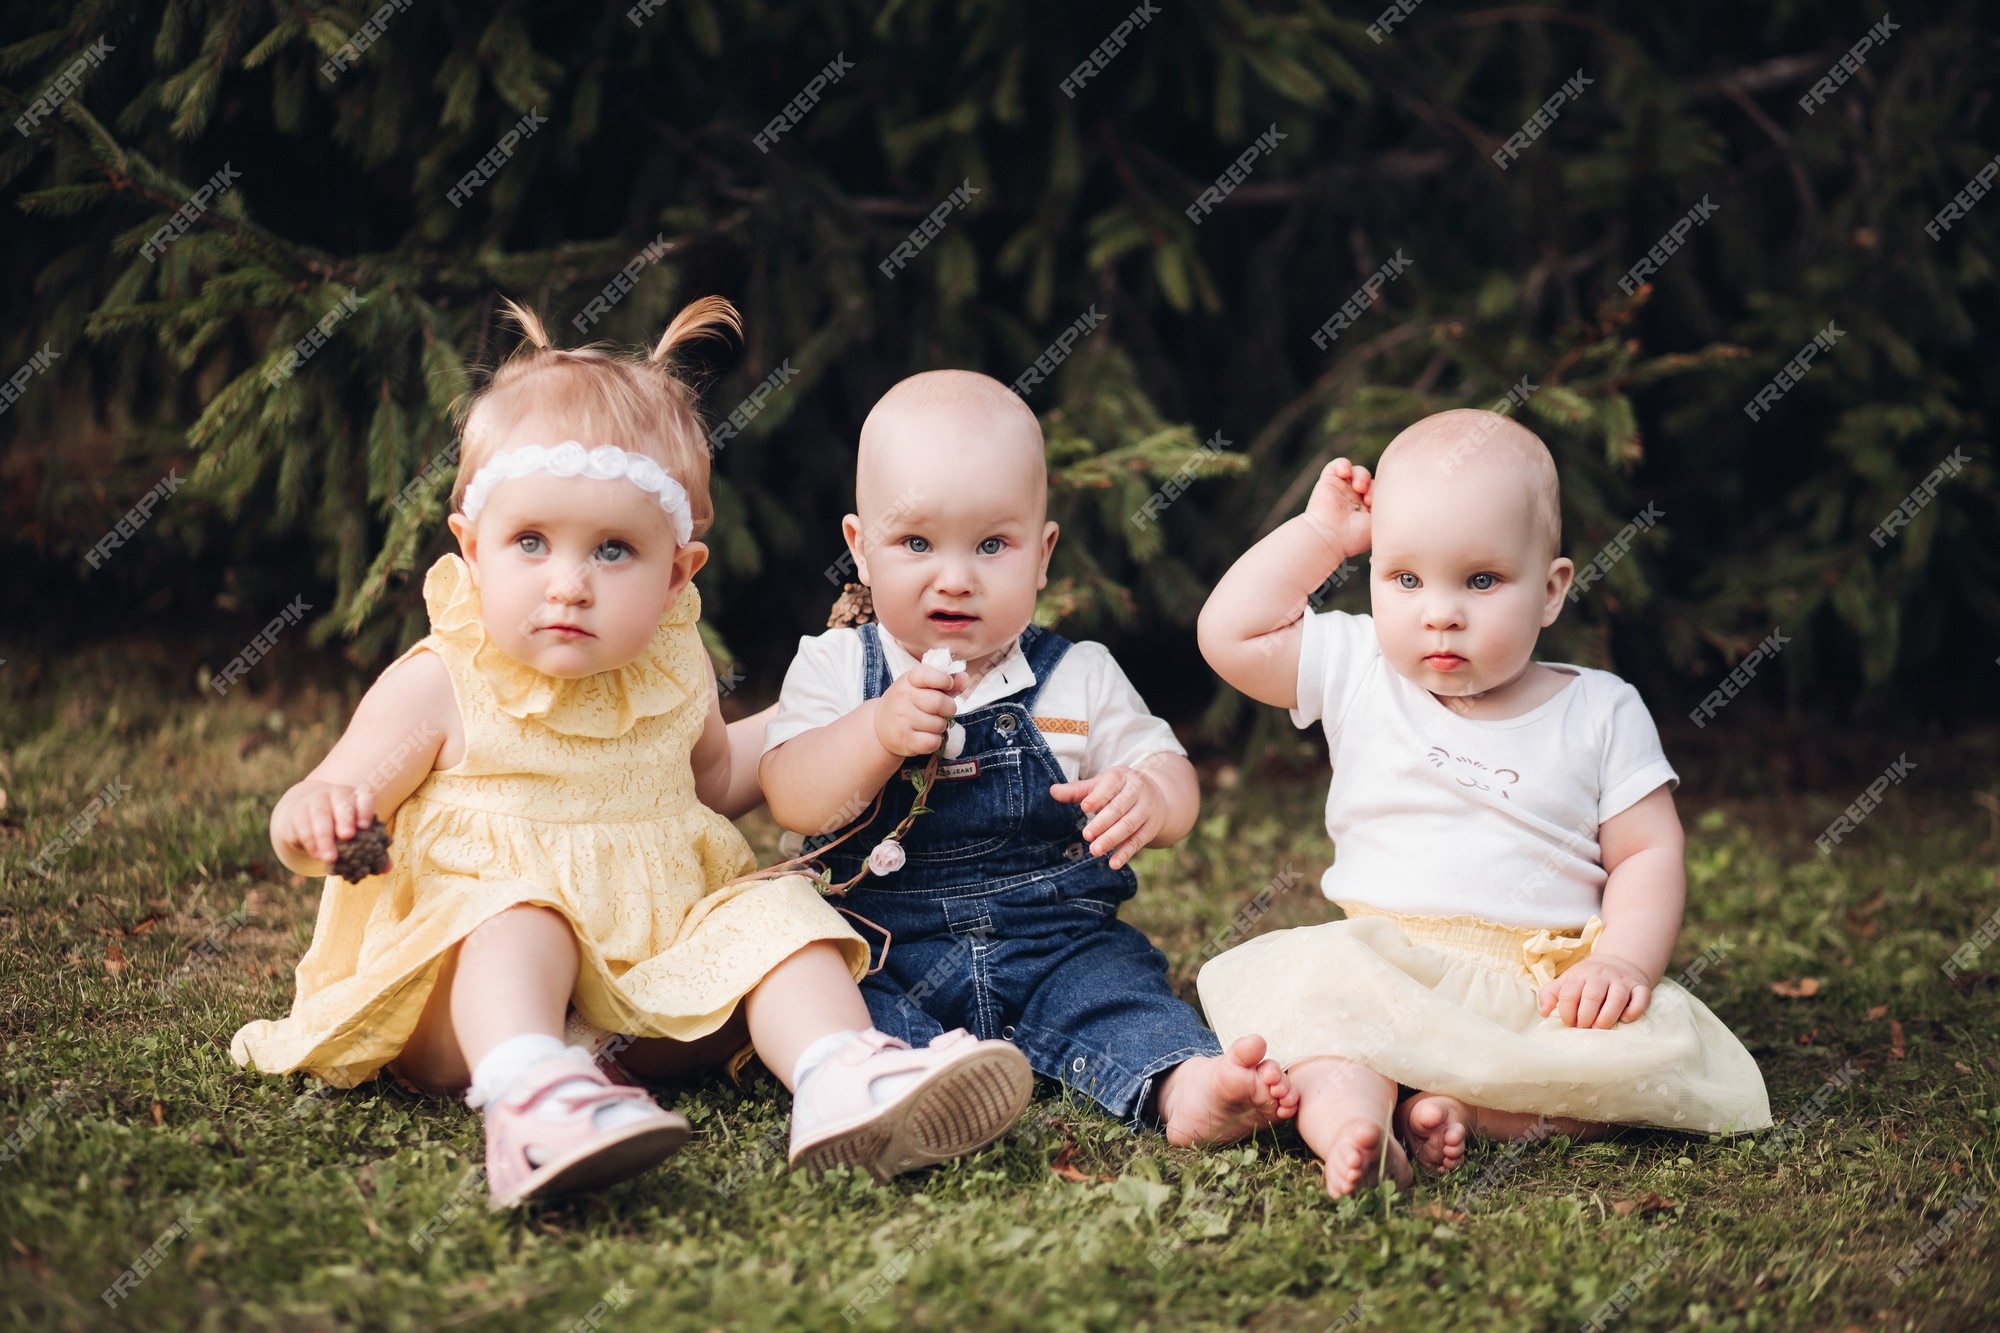 Tres adorables bebés bonitos vestidos ropa de primavera mientras miran a la cámara en el jardín. concepto de infancia | Foto Premium